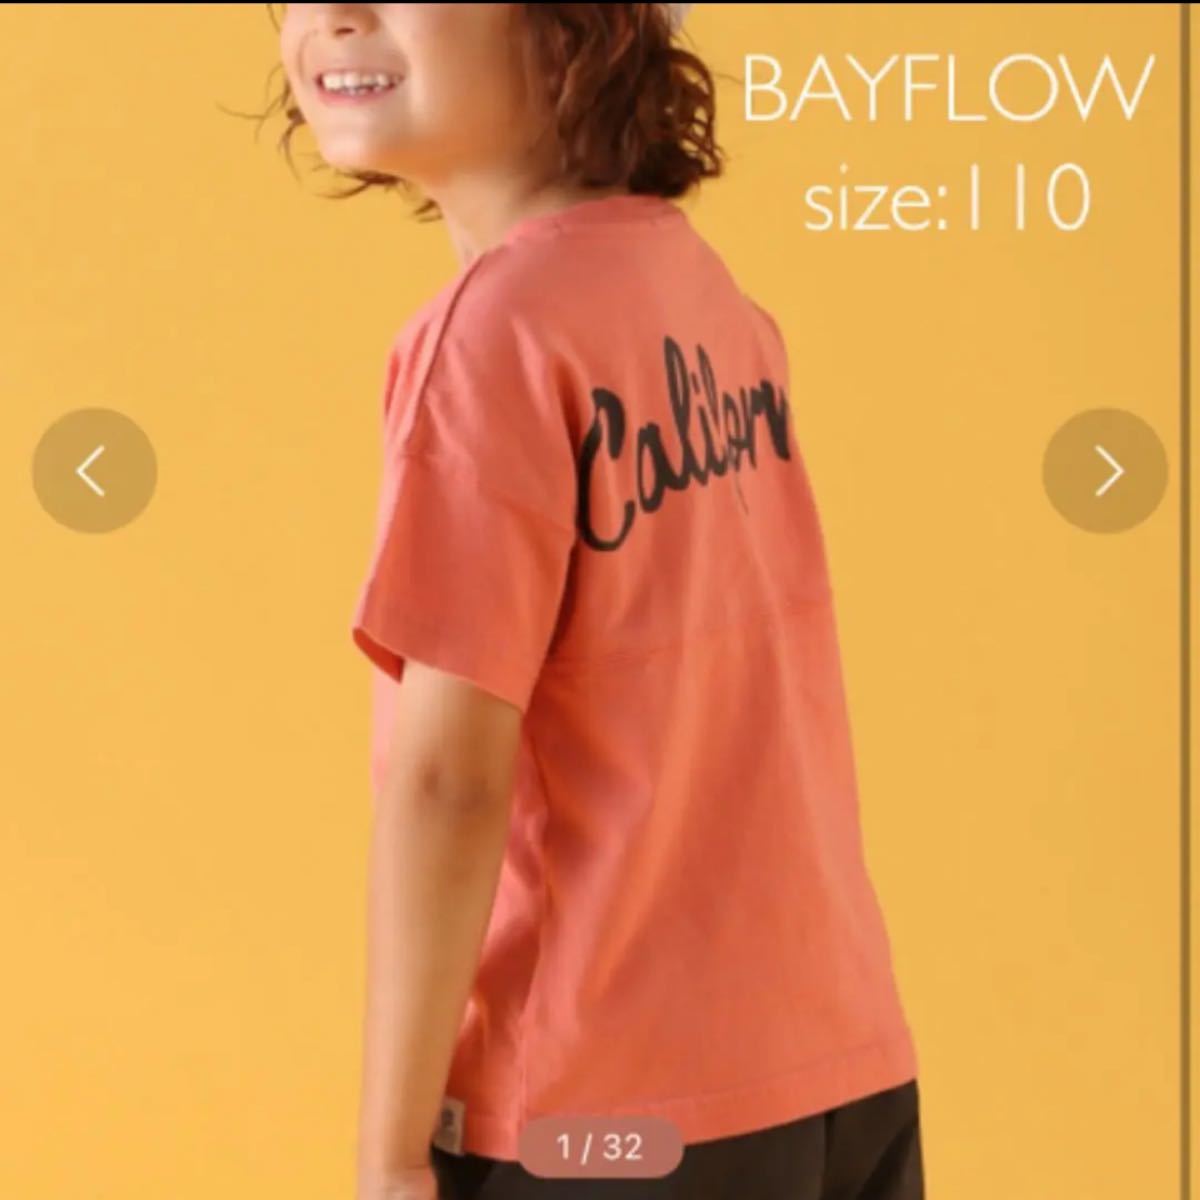 BAYFLOW バックロゴTee 半袖Tシャツ 110